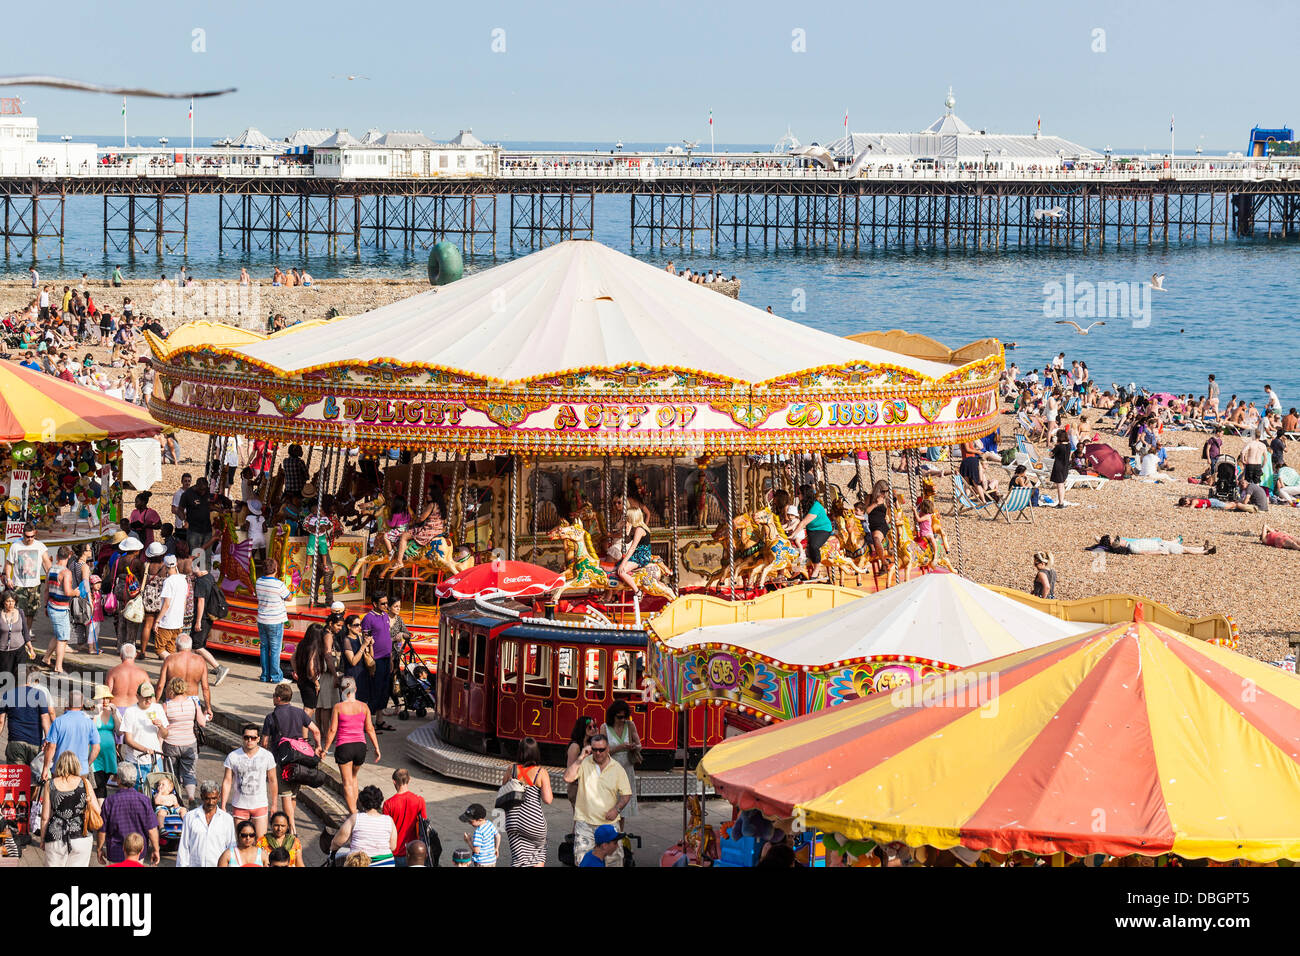 Merry ir alrededor de la playa, Brighton, Inglaterra, Reino Unido. Foto de stock